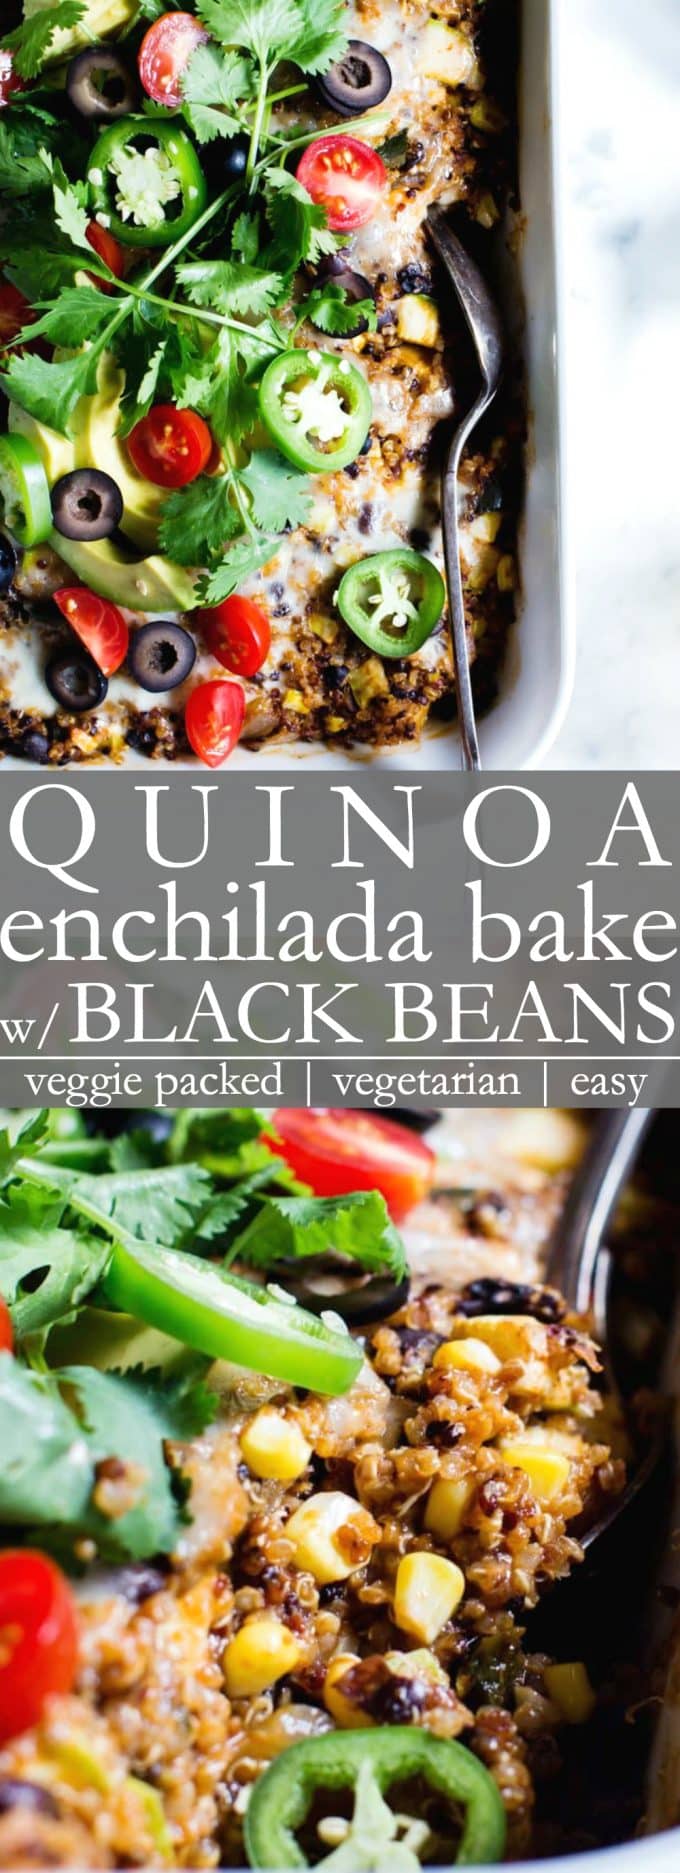 Pinterest pin for quinoa enchilada bake with black beans. 